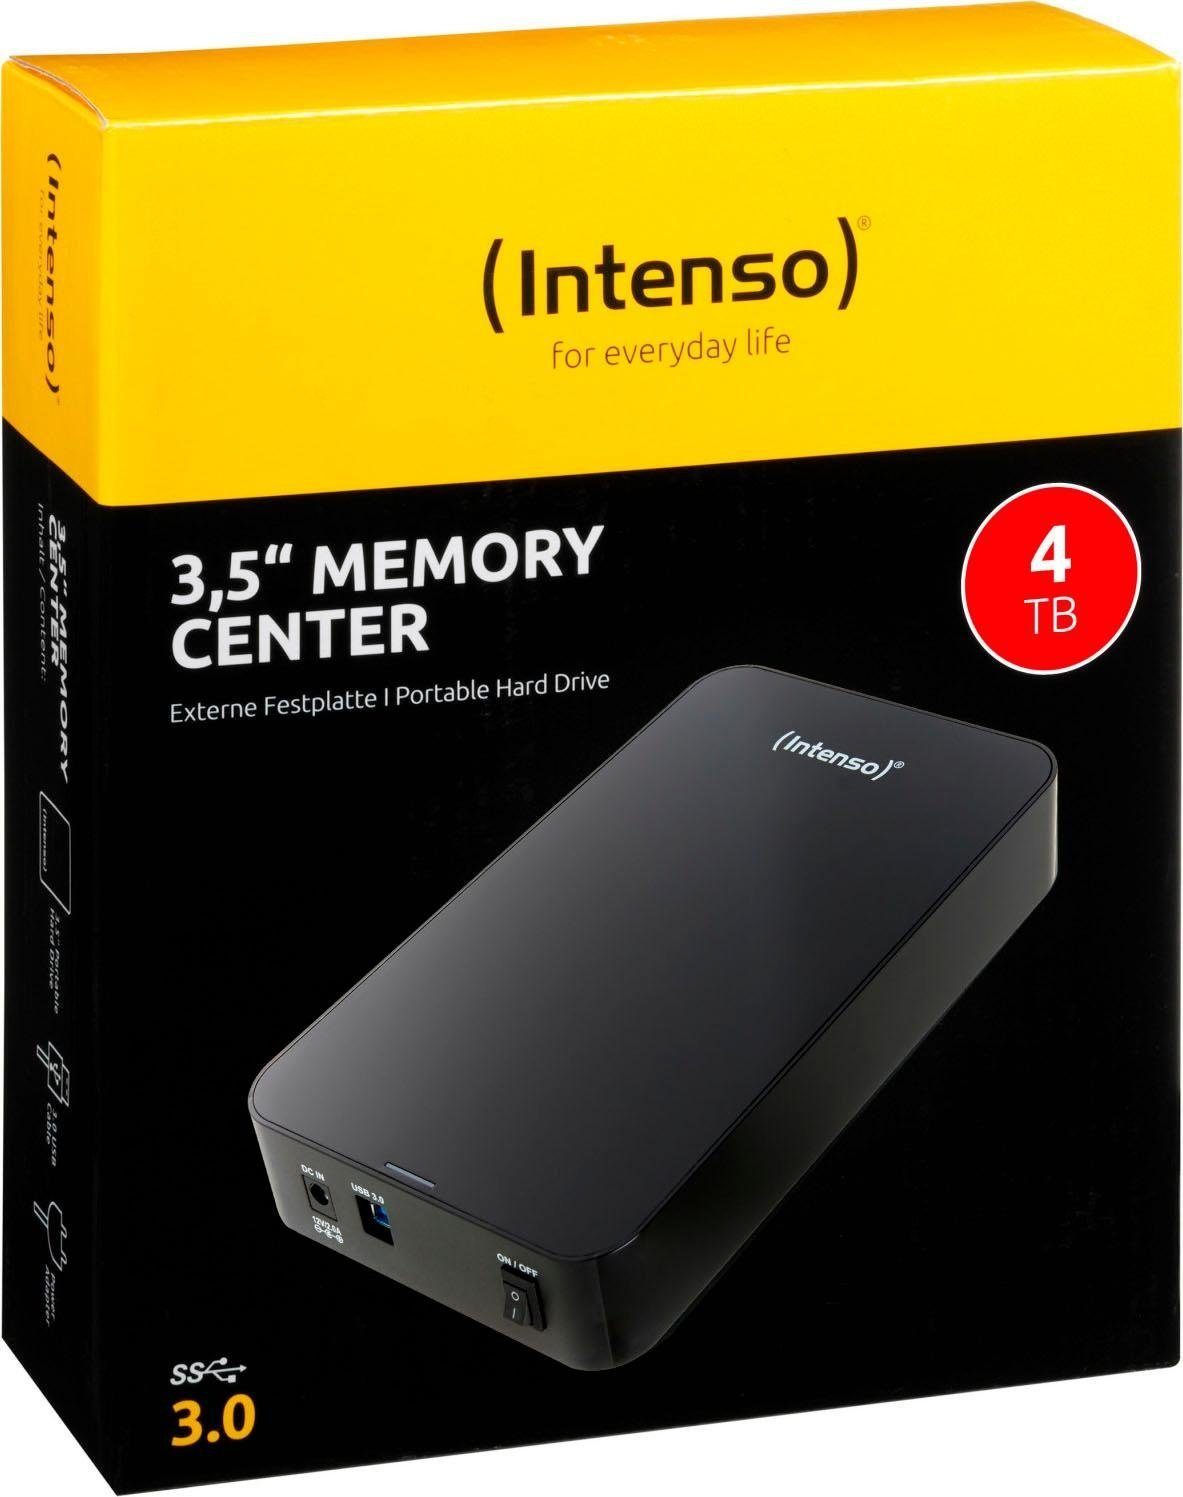 MB/S Intenso HDD-Festplatte Memory MB/S (4 3,5" Lesegeschwindigkeit, Schreibgeschwindigkeit 75 TB) Center 85